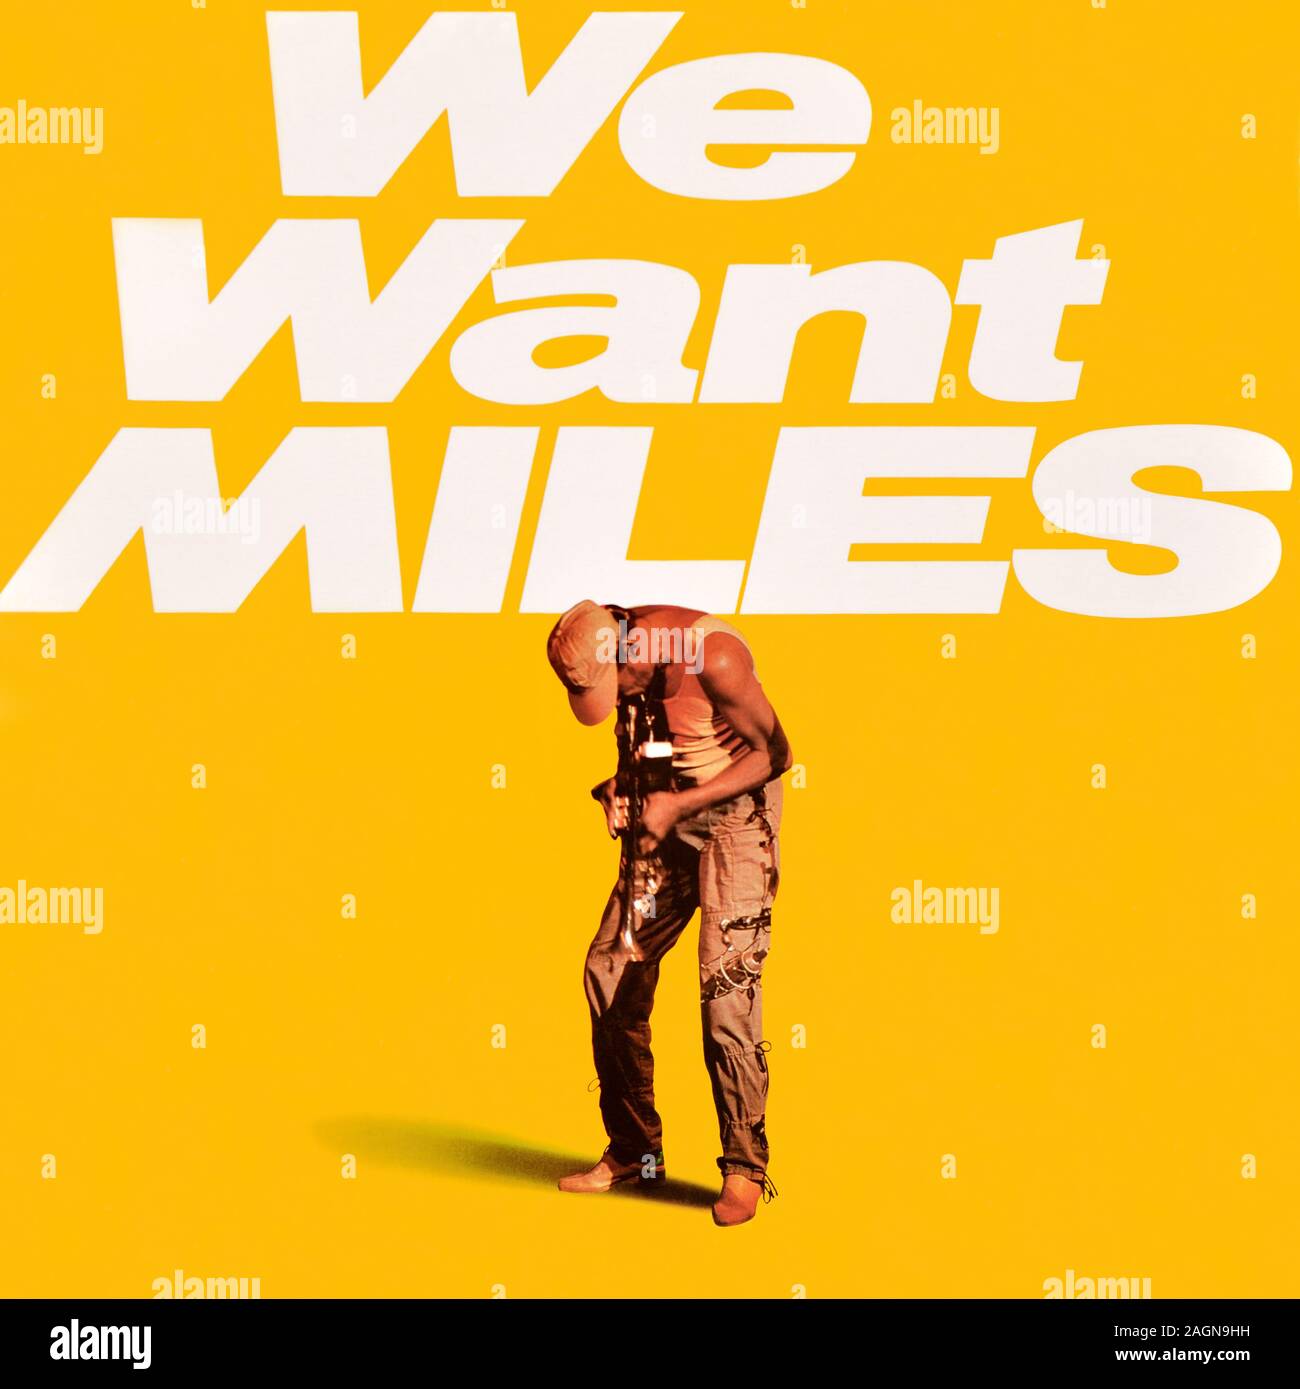 Miles Davis - original vinyl album cover - We Want Miles - 1982 Stock Photo